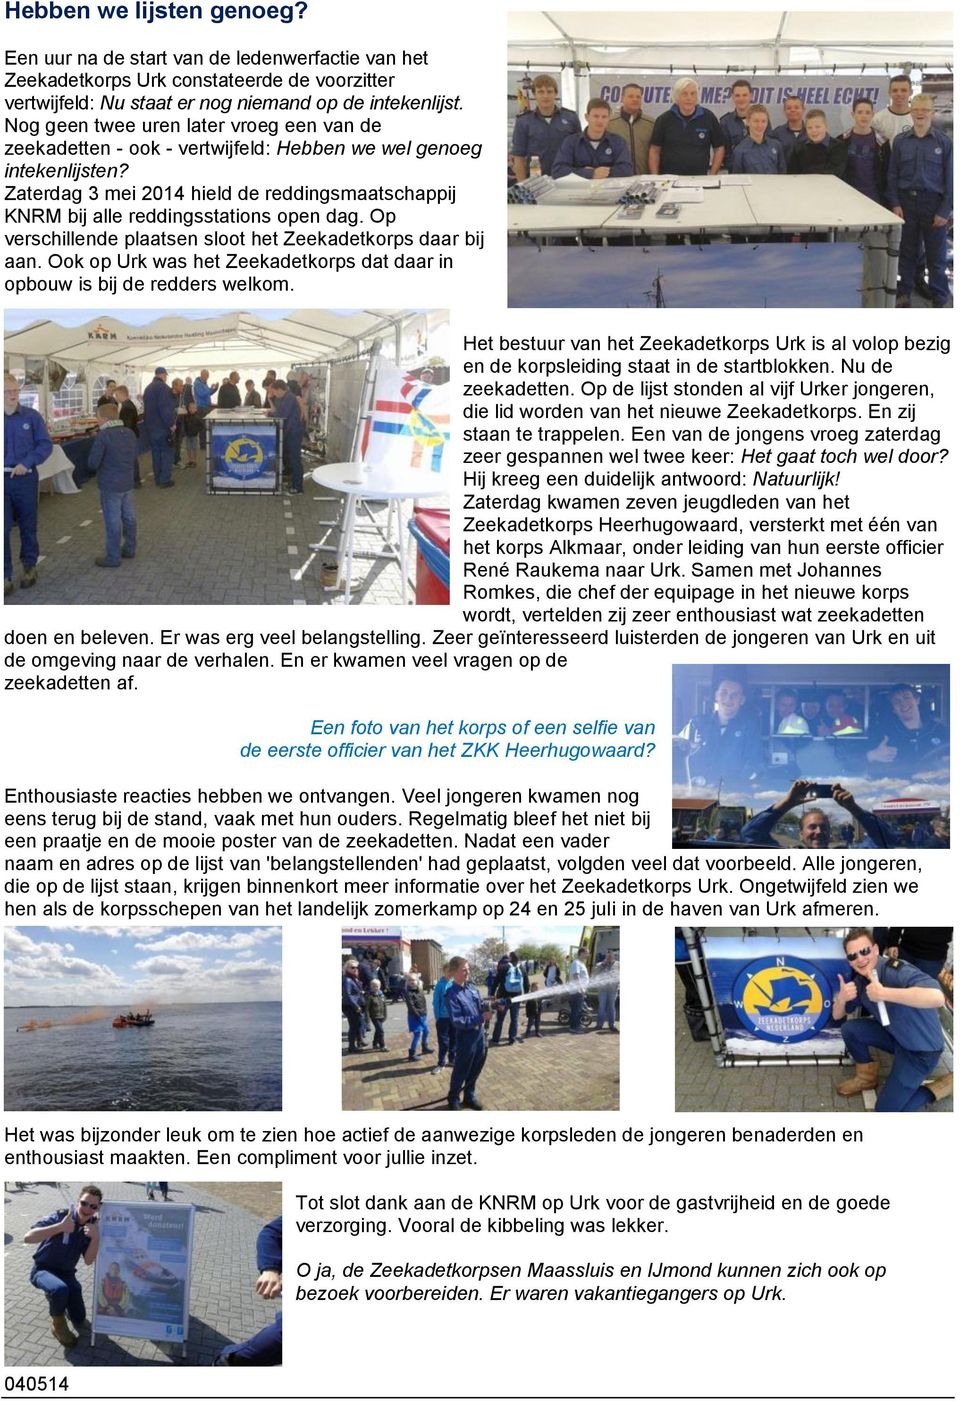 Zaterdag 3 mei 2014 hield de reddingsmaatschappij KNRM bij alle reddingsstations open dag. Op verschillende plaatsen sloot het Zeekadetkorps daar bij aan.